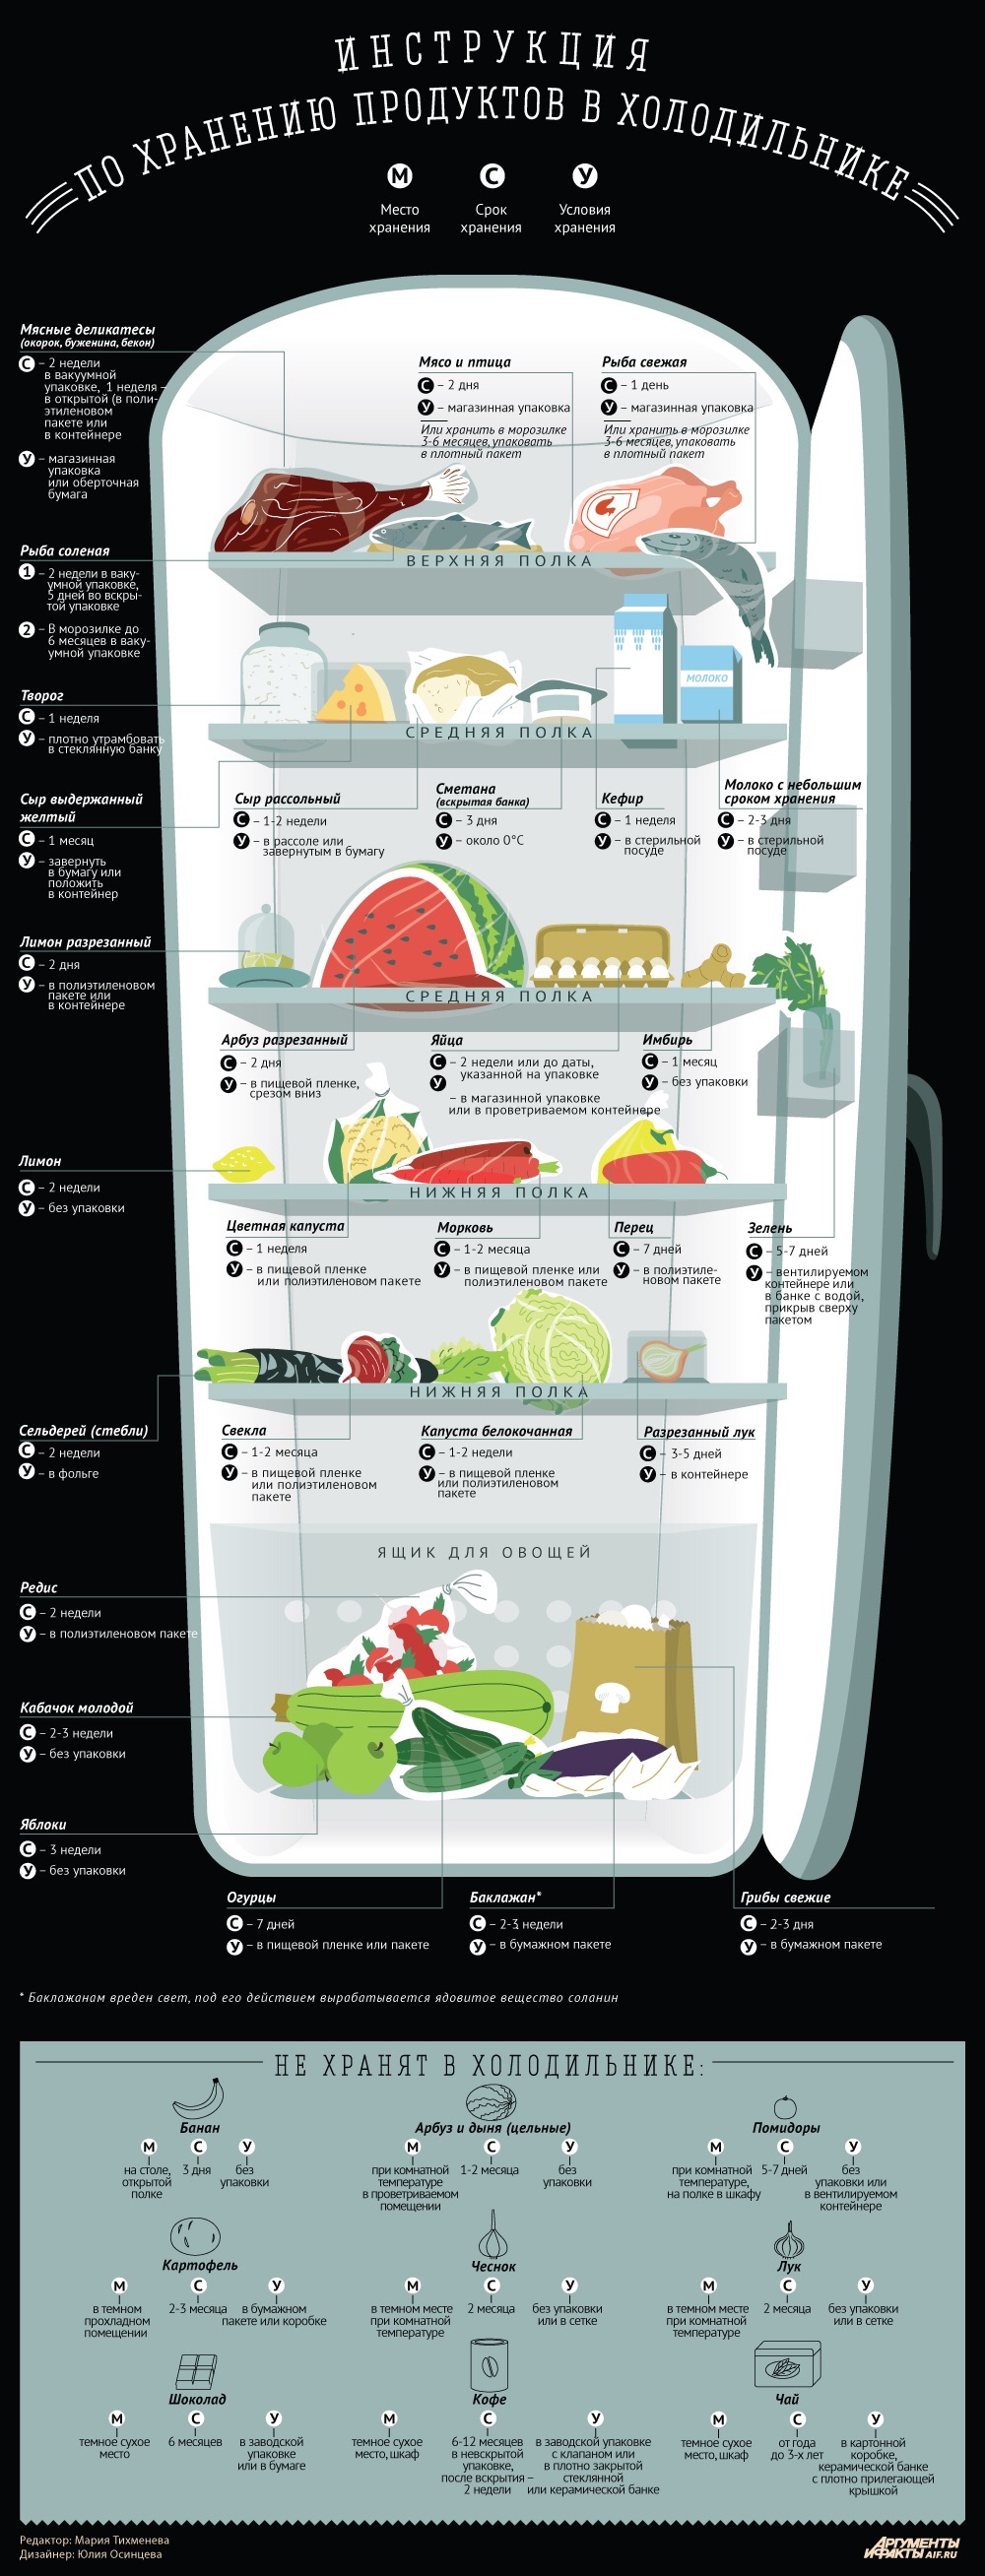 Как хранить продукты в холодильнике. Инфографика.